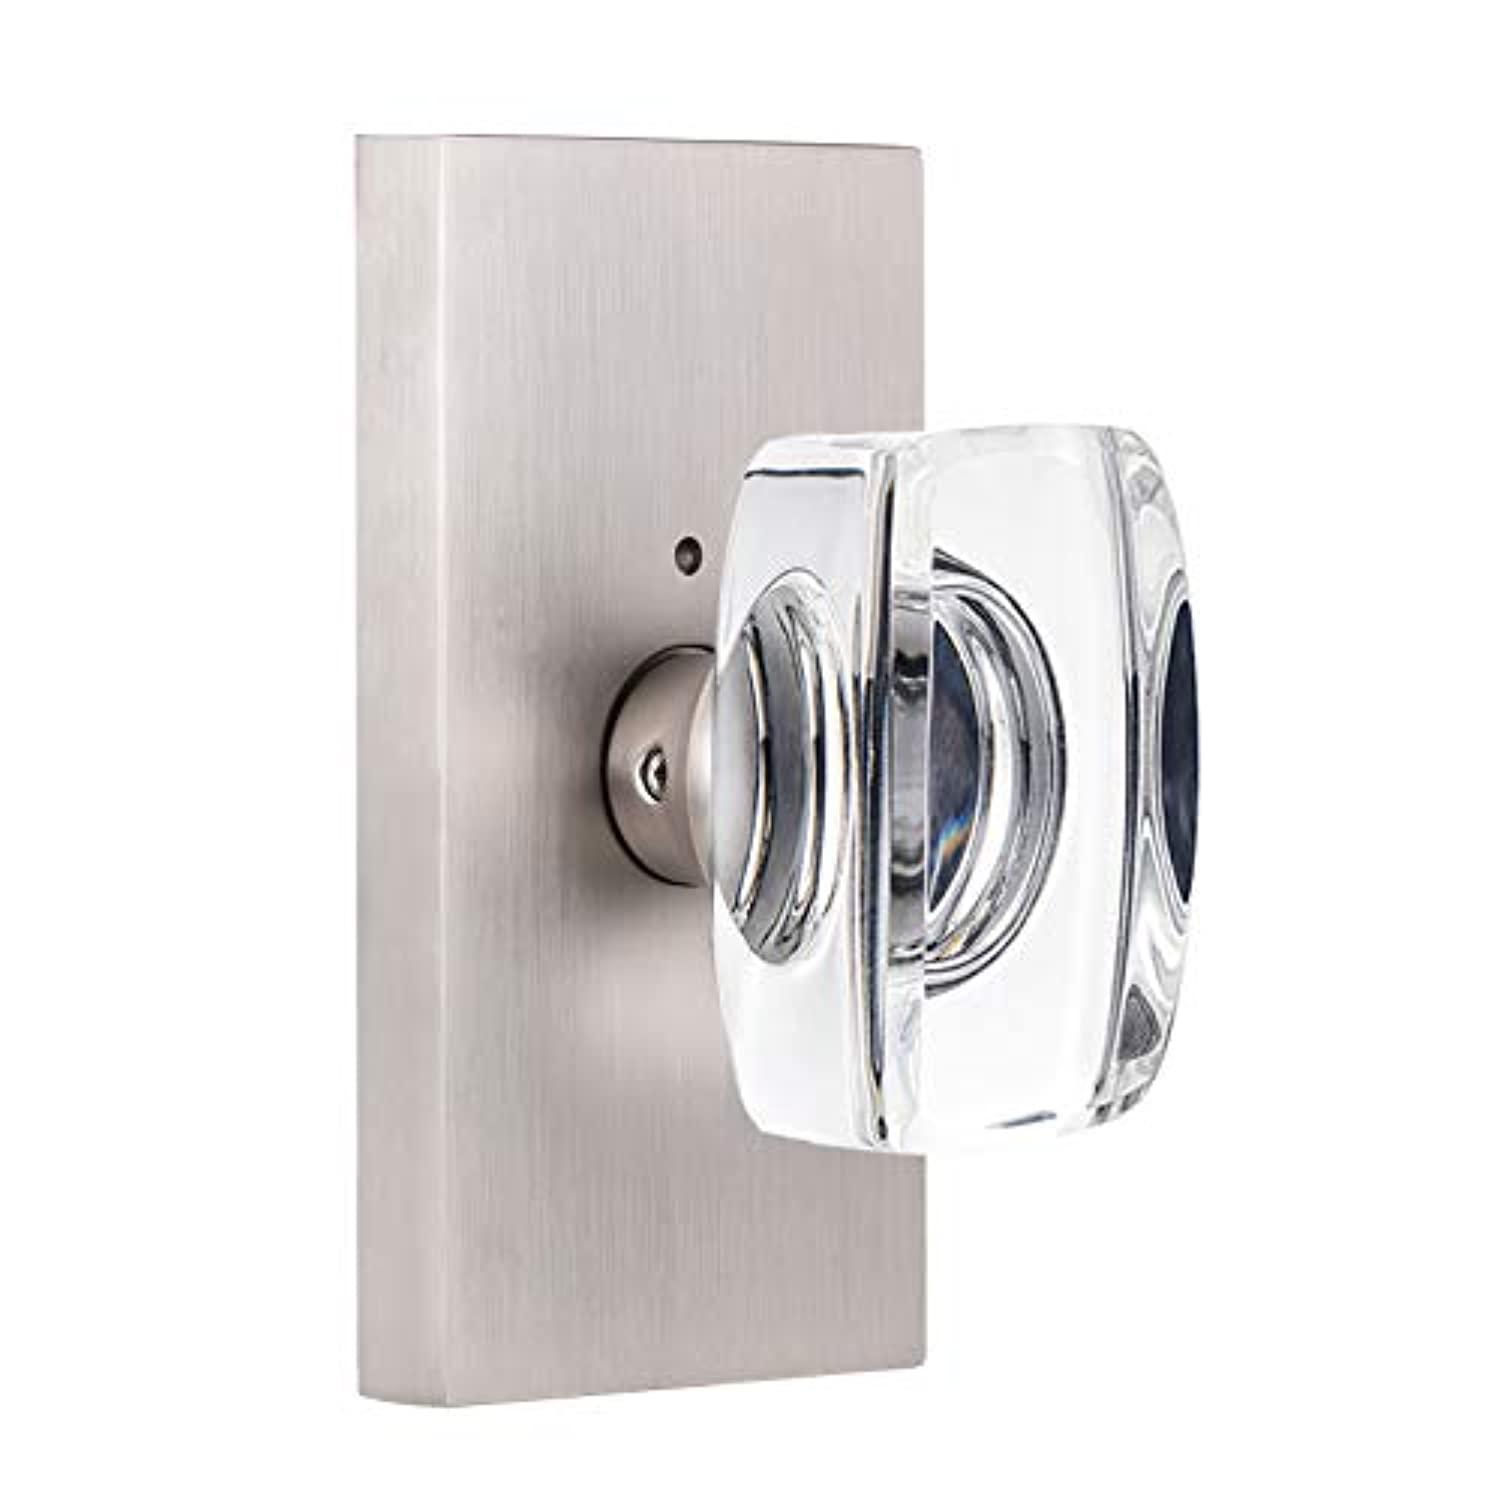 hiemey glass door knobs interior, crystal door knobs with lock, privacy bedroom/bathroom door knob, brushed nickel, classic a